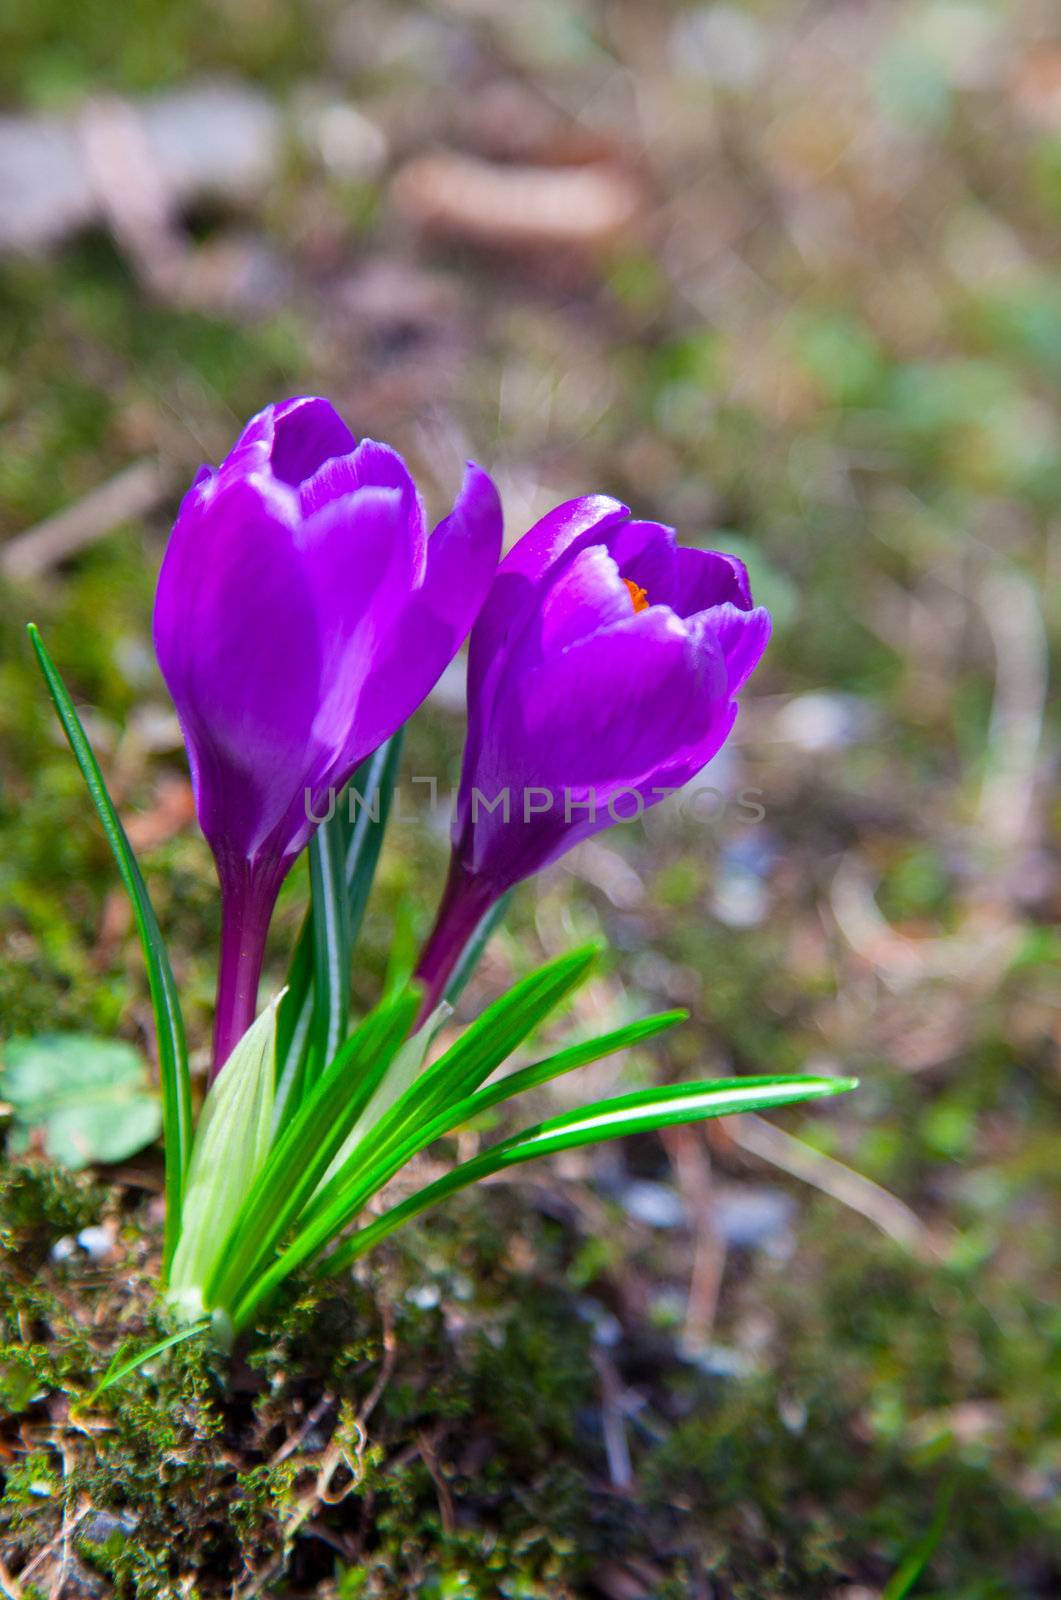 two purple crocus flowers in the springtime by motorolka